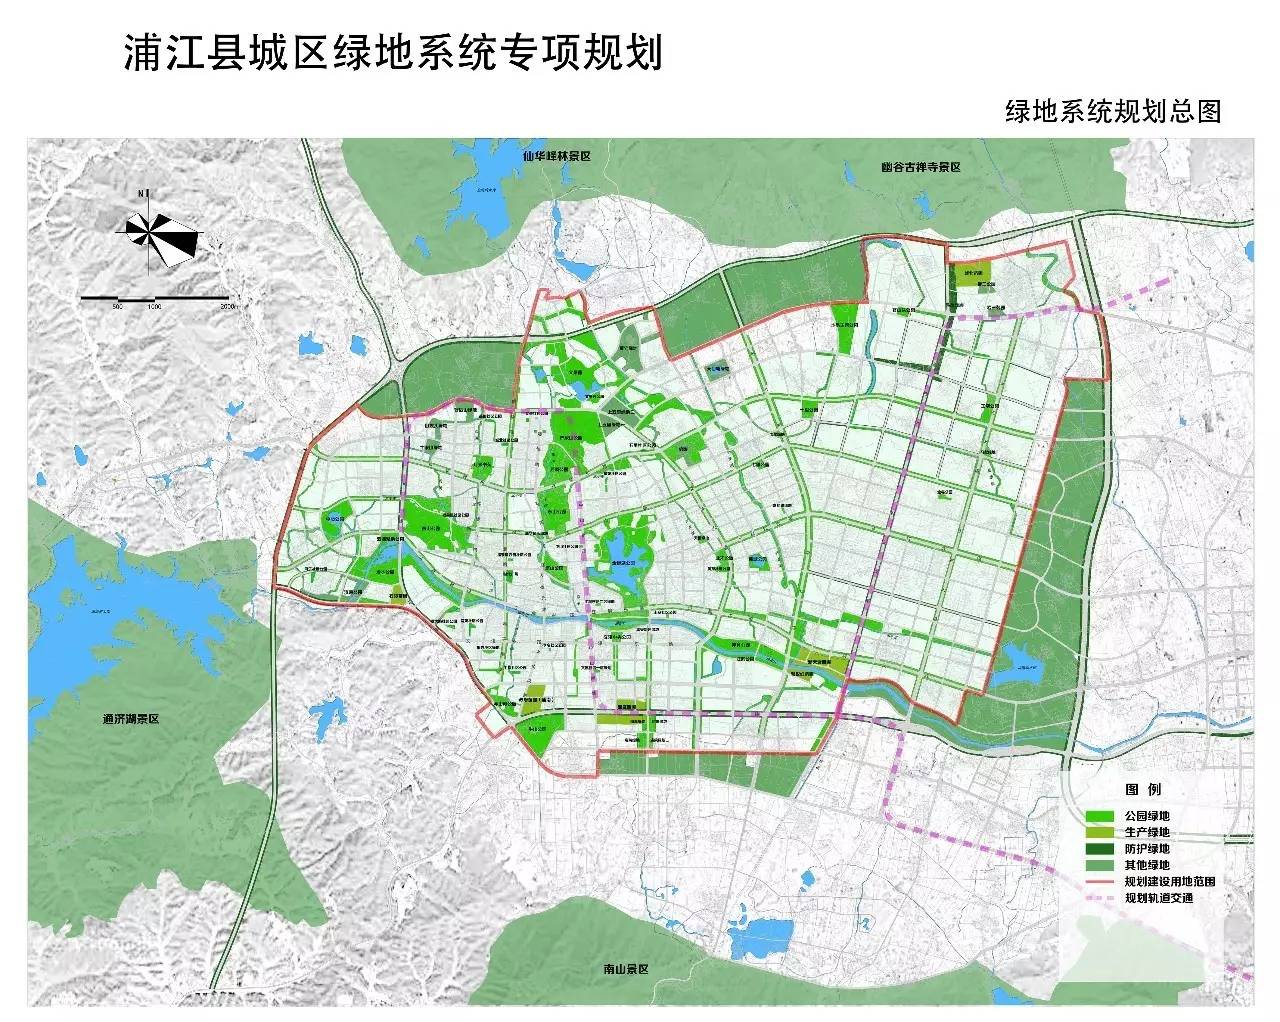 《浦江县城区绿地系统专项规划》已编制完成,依据《中华人民共和国图片